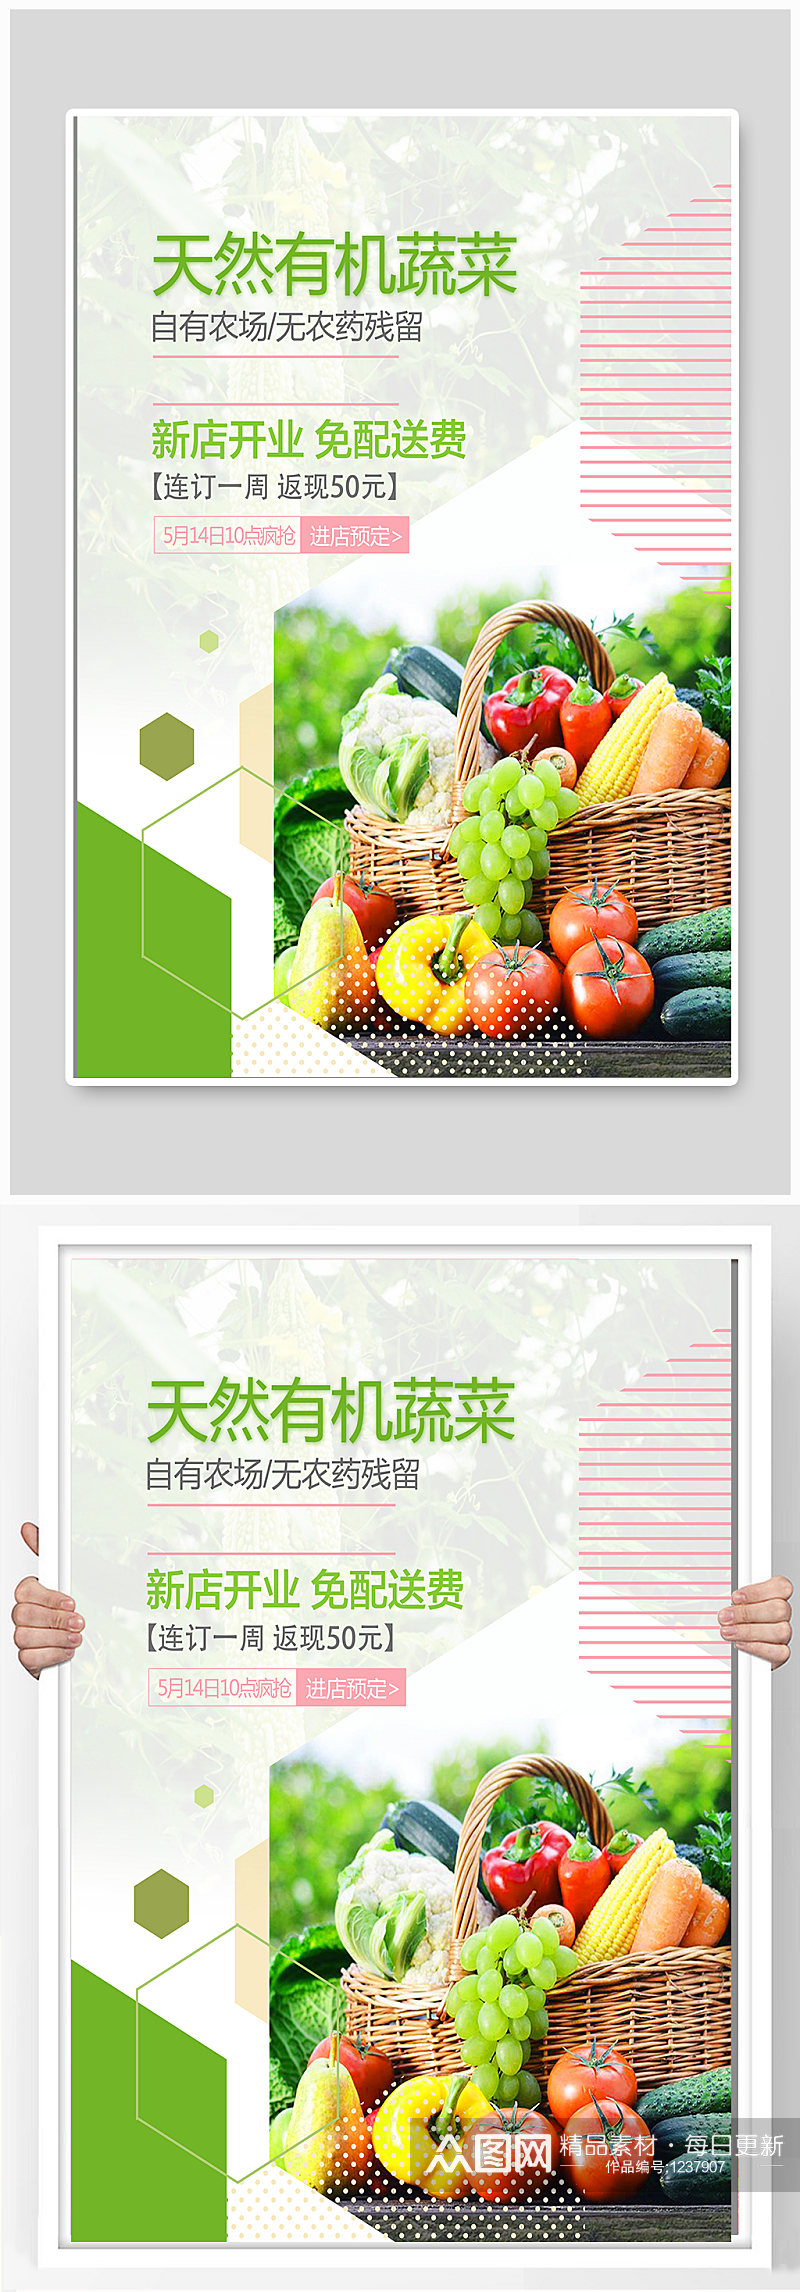 天然有机蔬菜宣传海报素材